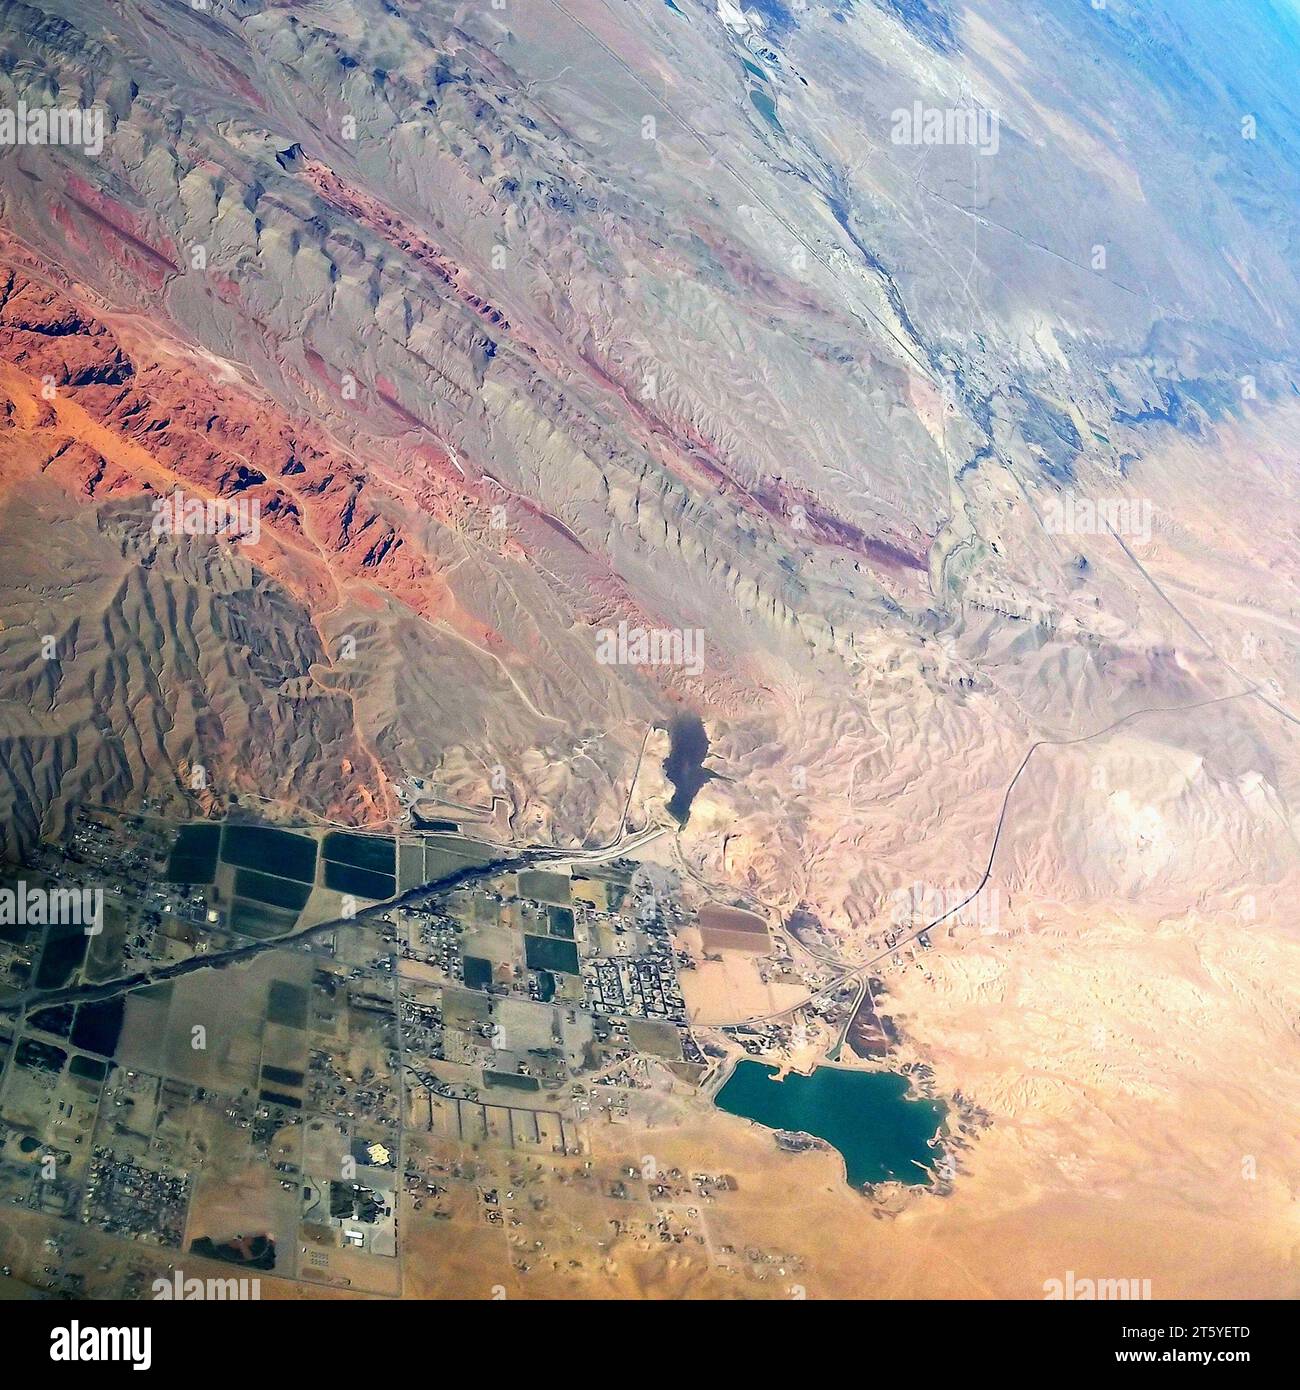 Vallée de feu grès rouge dans le soleil. Overton en bas à droite, en regardant vers Moapa Nevada. Vue aérienne. Banque D'Images